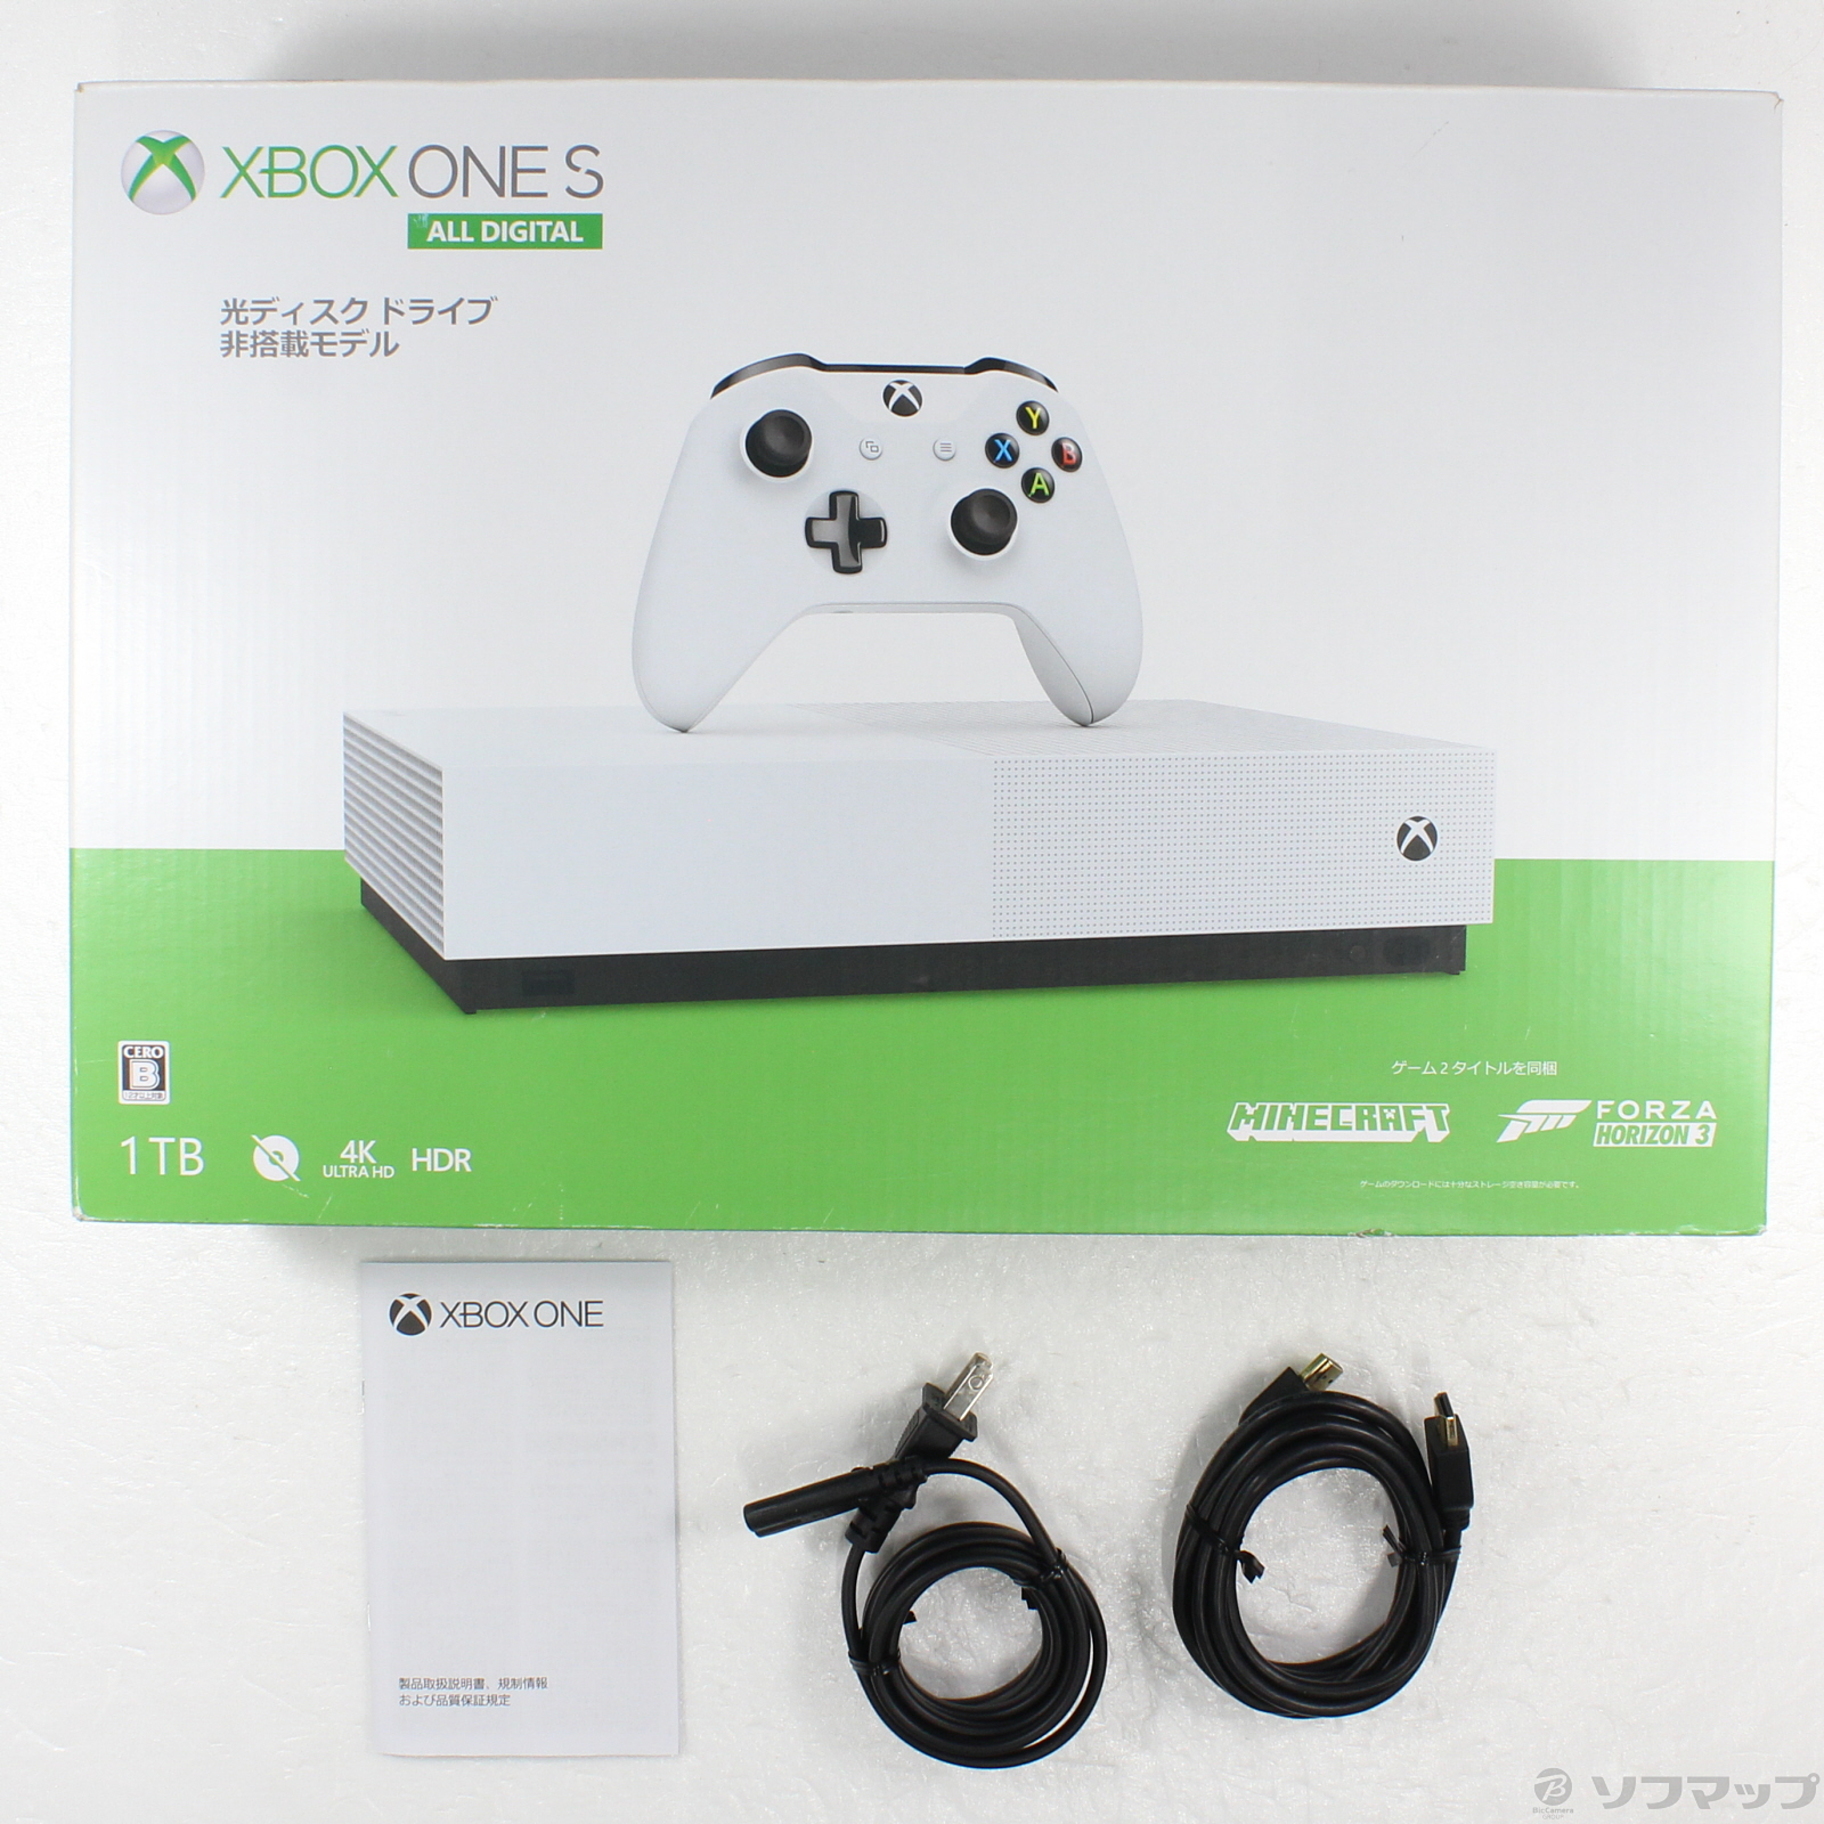 〔中古品〕 Xbox One S 1TB All Digital Edition